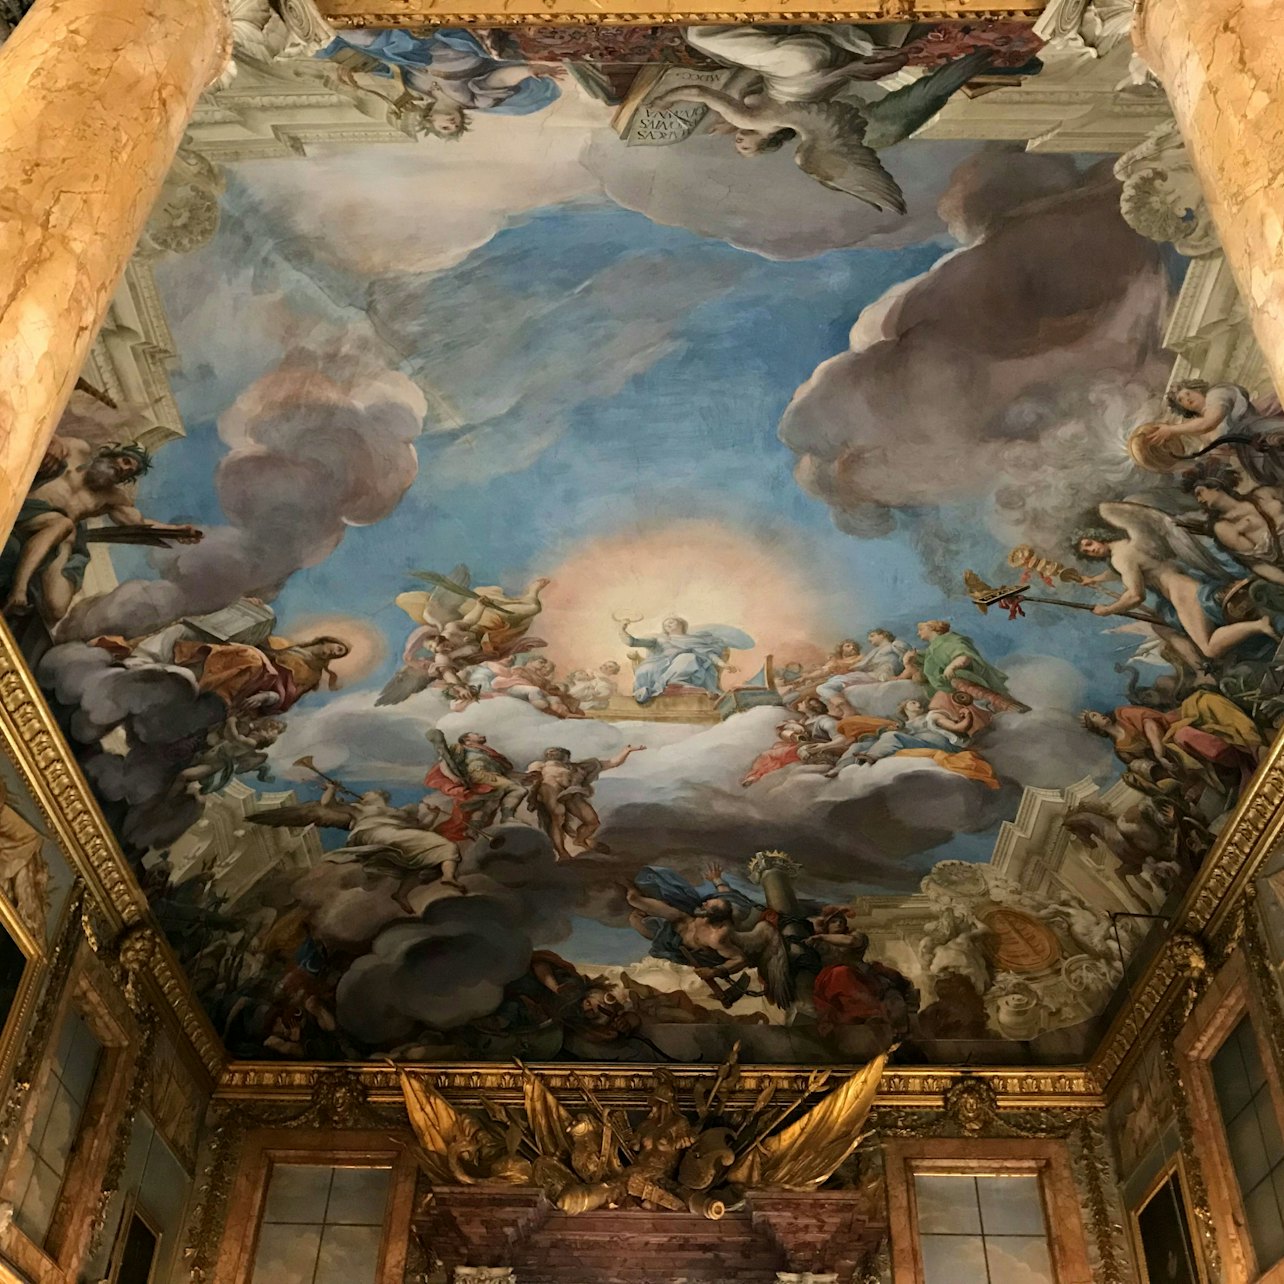 Galeria Colonna - Acomodações em Roma